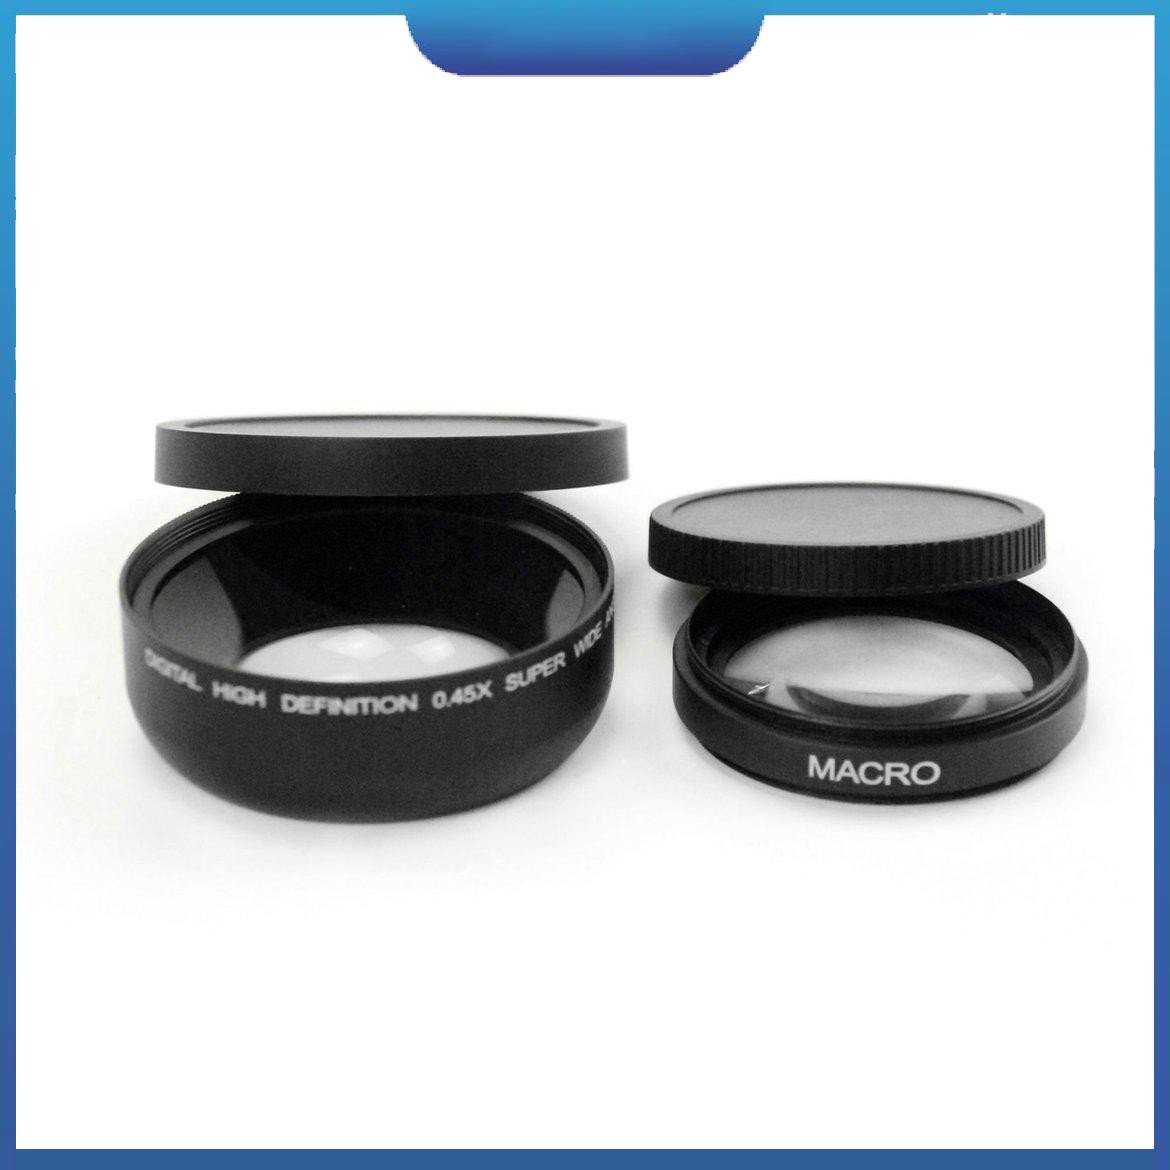 Ống kính góc rộng 18-55mm chuyên dụng cho máy ảnh Canon EOS 4000D/2000D